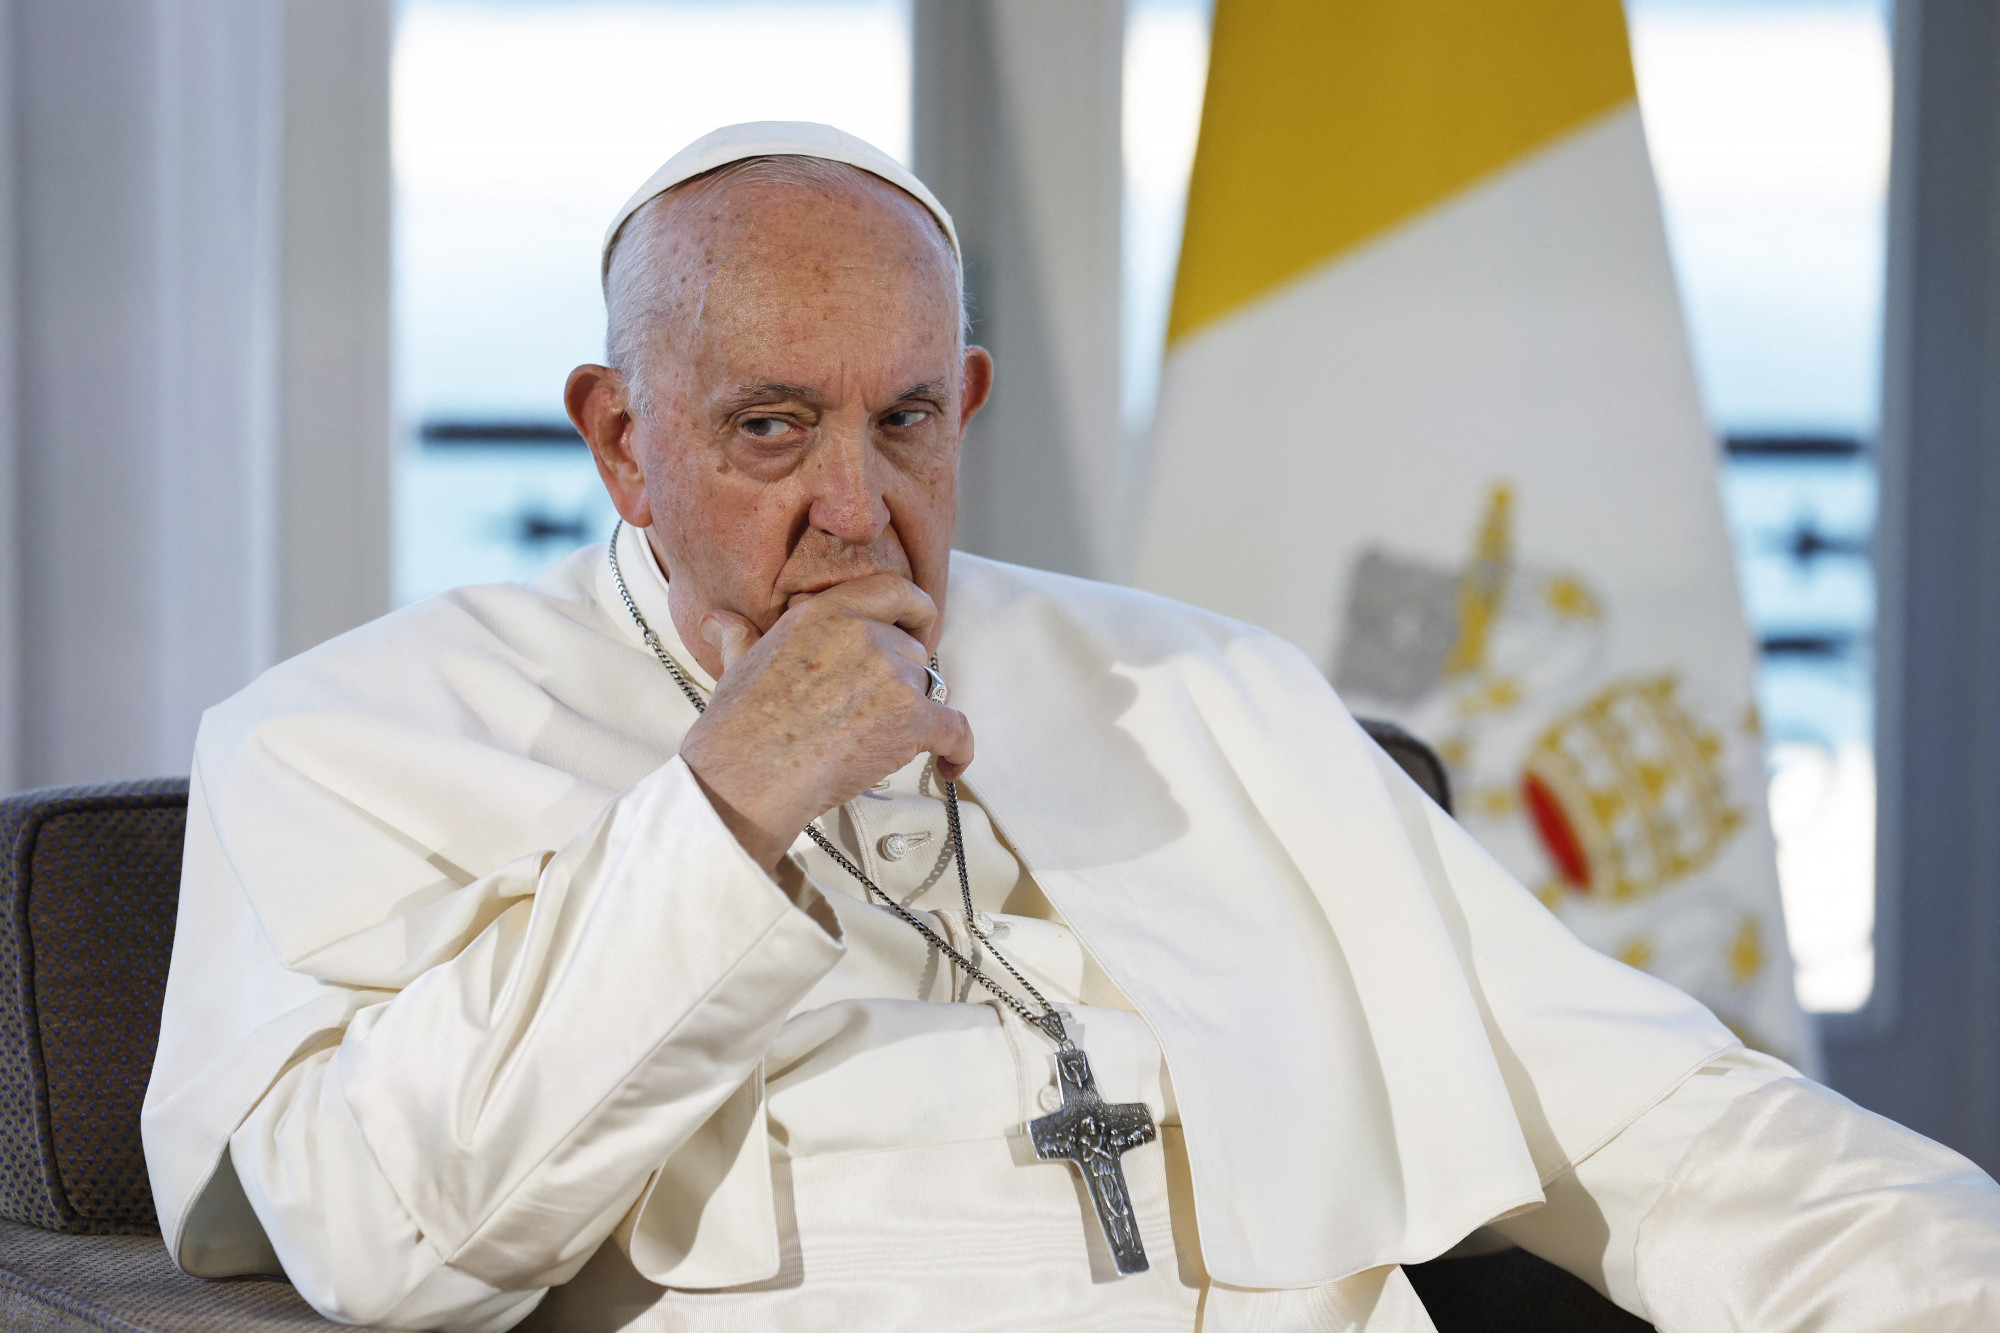 Ferenc pápa: A migráció nem vészhelyzet, hanem korunk valósága, amit humánusan kell kezelni